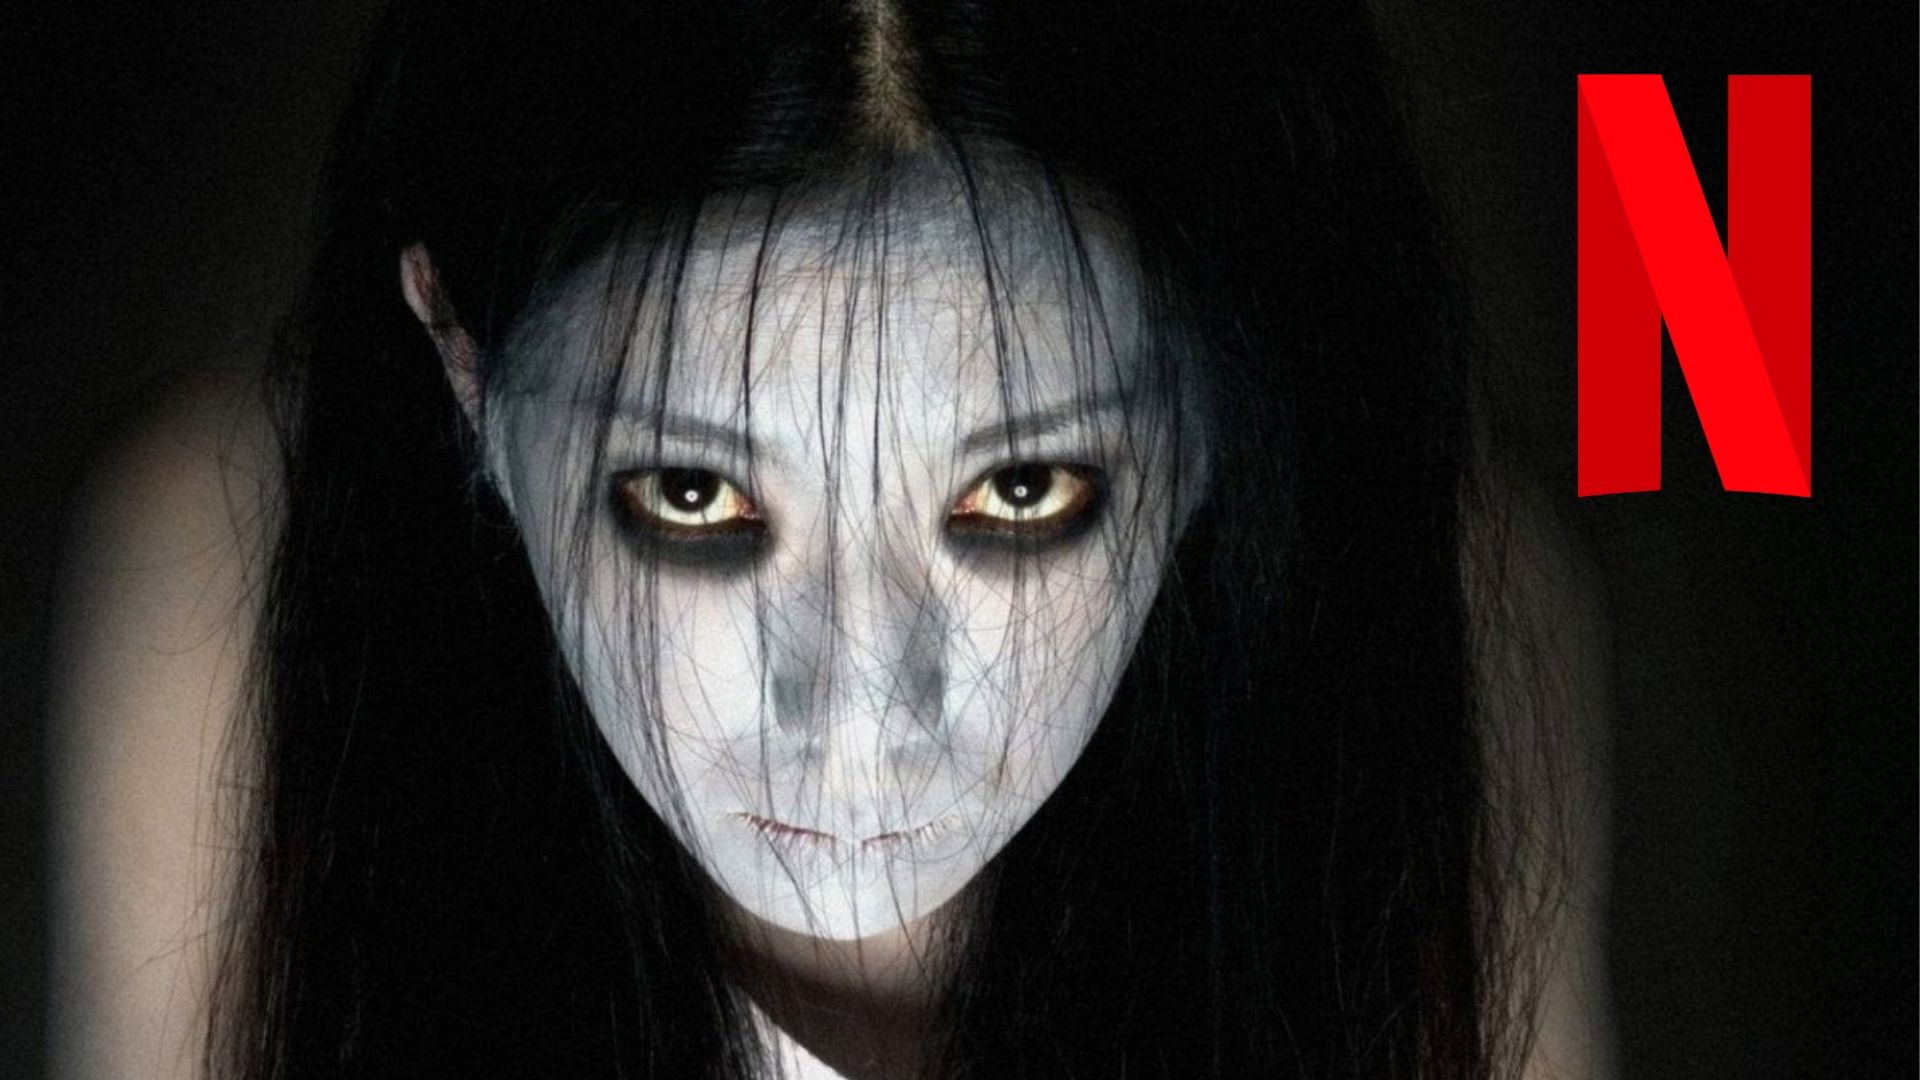 Netflix : La série japonaise d'horreur Ju-On Origins se dévoile